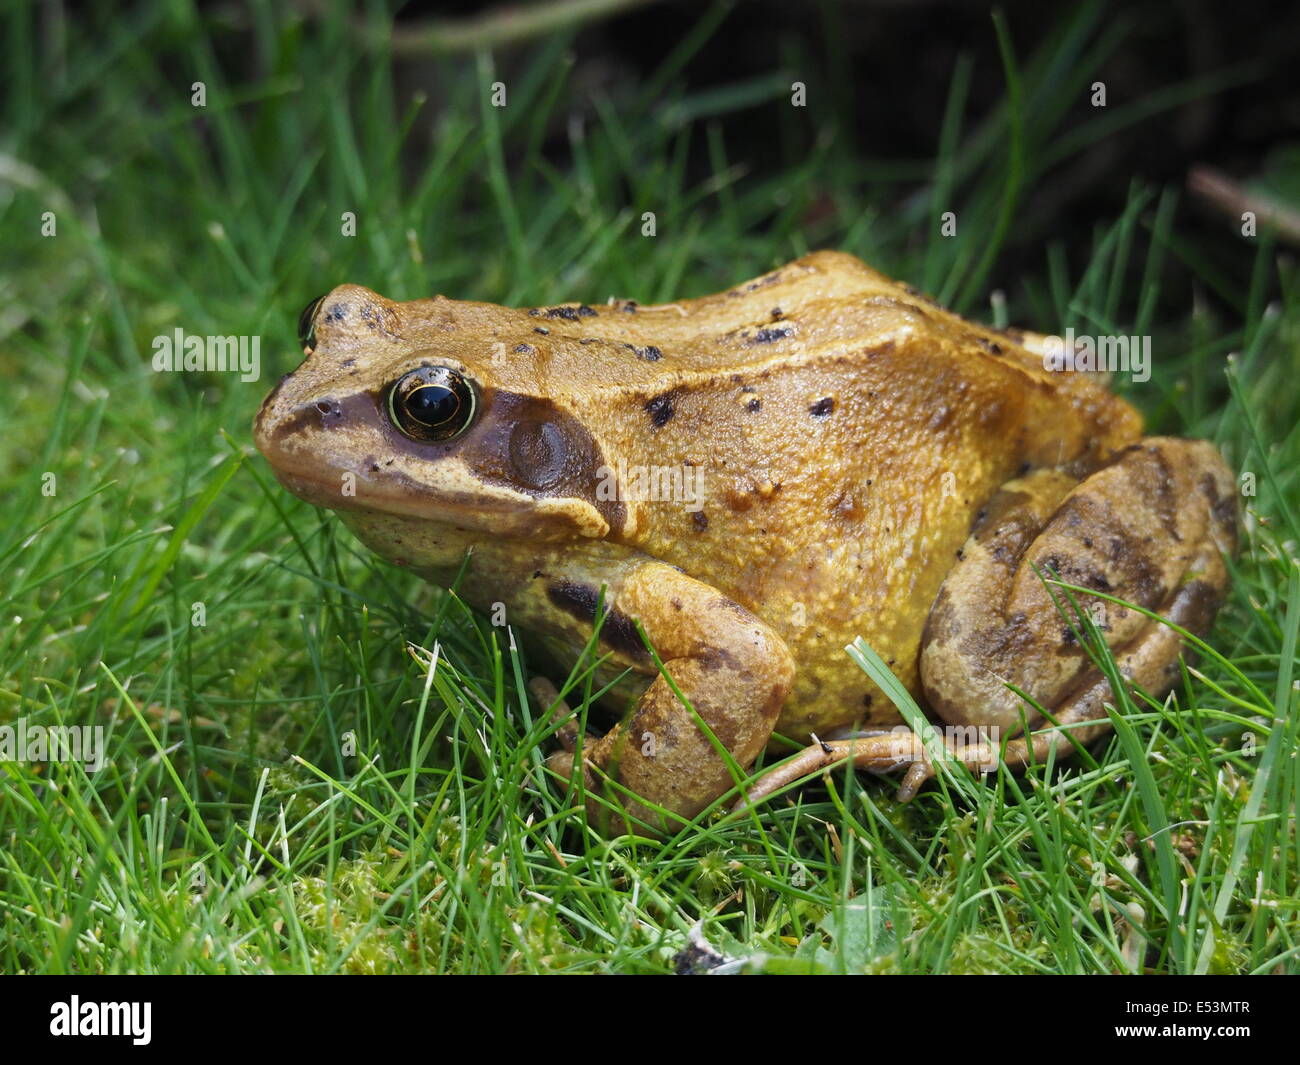 Européens matures grenouille rousse (Rana temporaria) assis dans l'herbe humide Banque D'Images